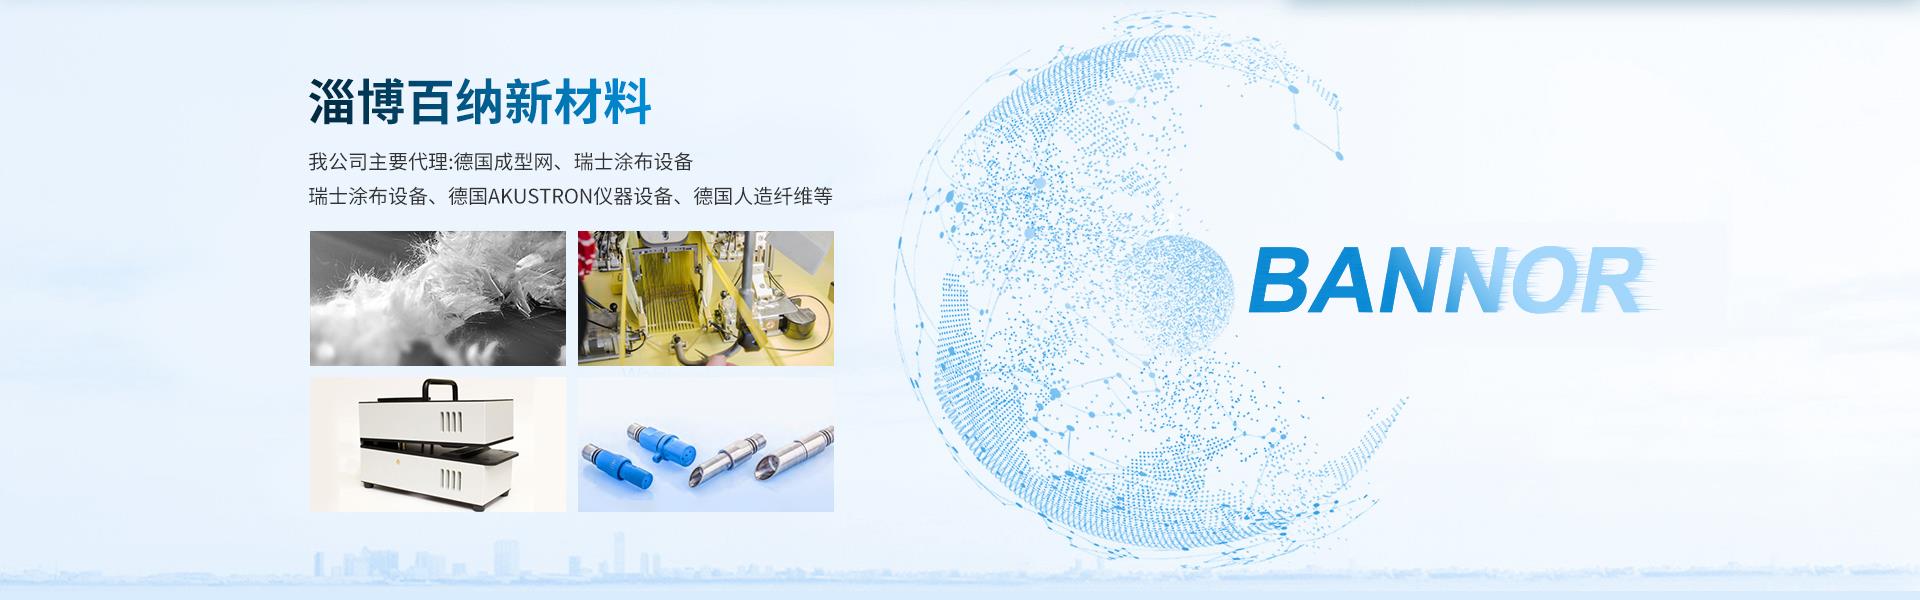 淄博百纳新材料科技有限公司 聚酯成型网 化学品混合器